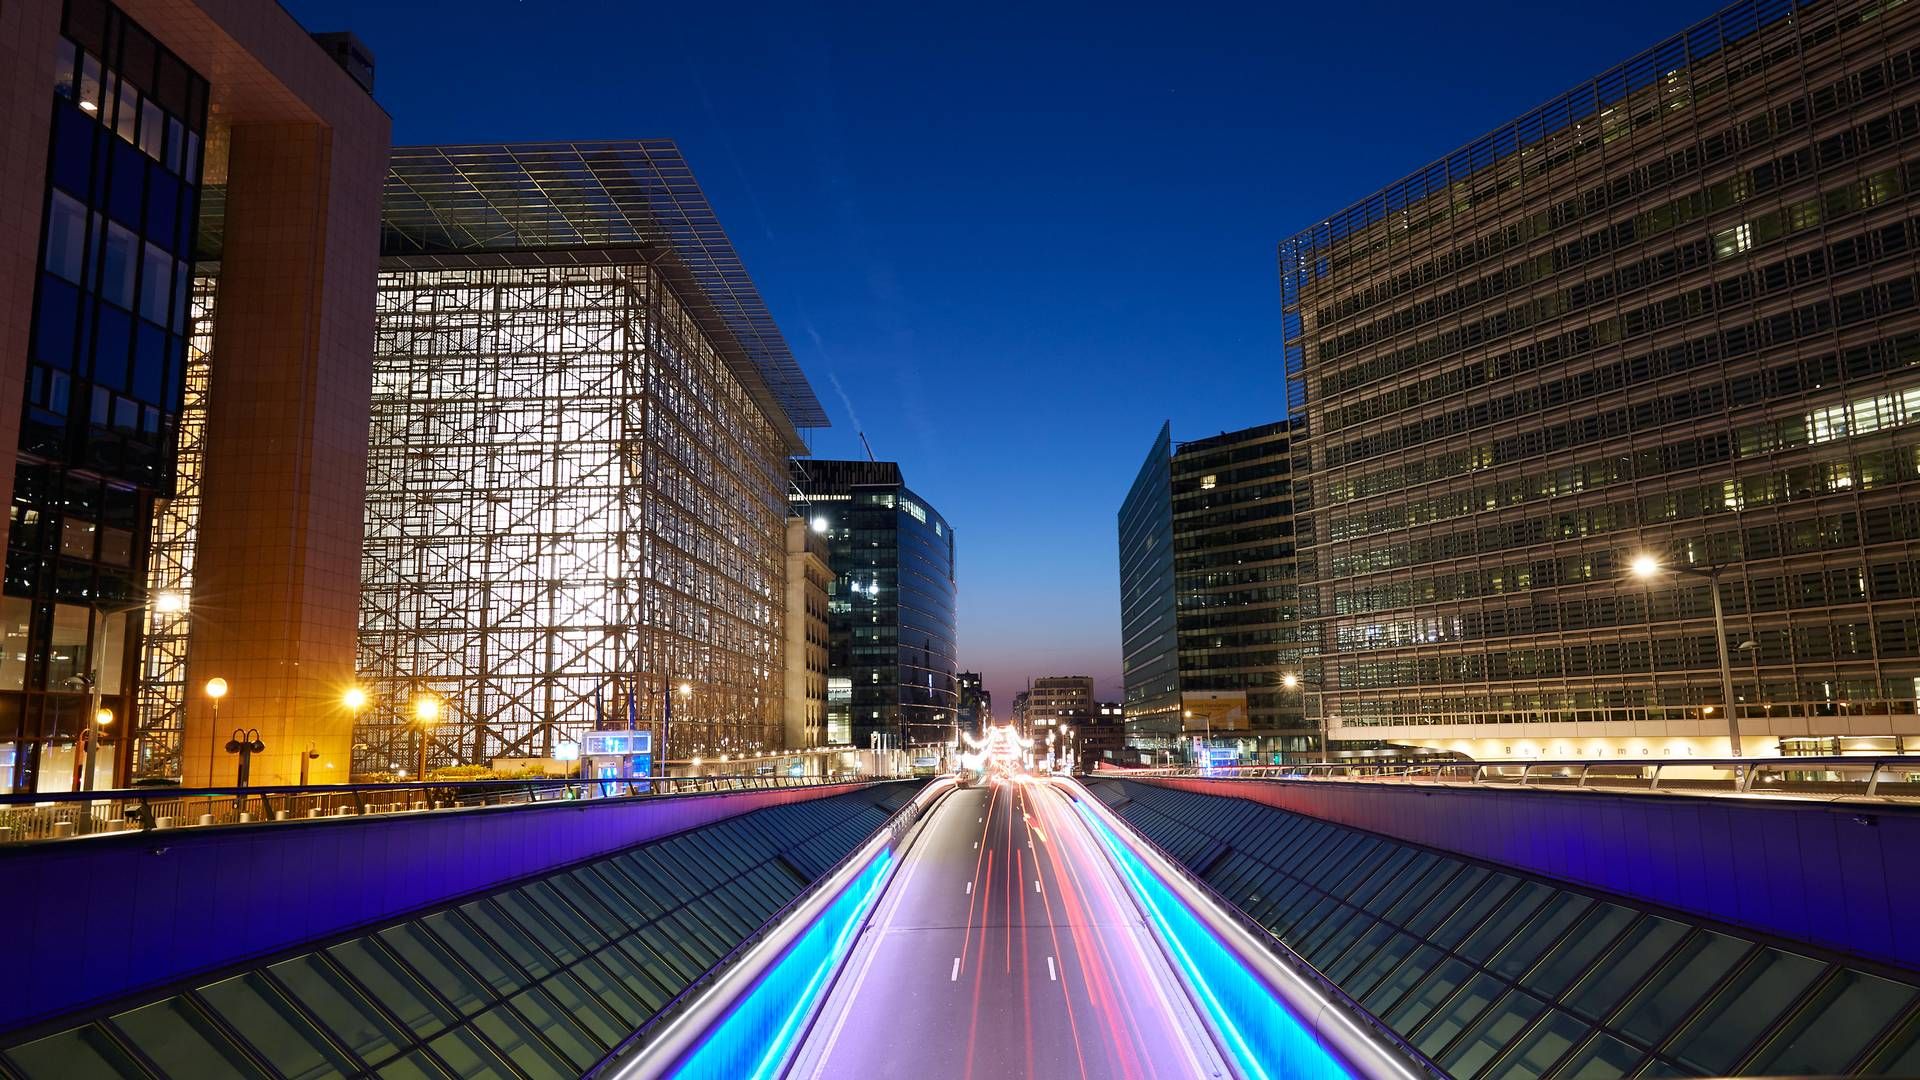 Wo geht die Reise hin? Nachtaufnahme der EU-Gebäude in Brüssel - links zu sehen das Europahaus, Sitz des Rates der Europäischen Union. | Foto: picture alliance / Caro | Ruffer